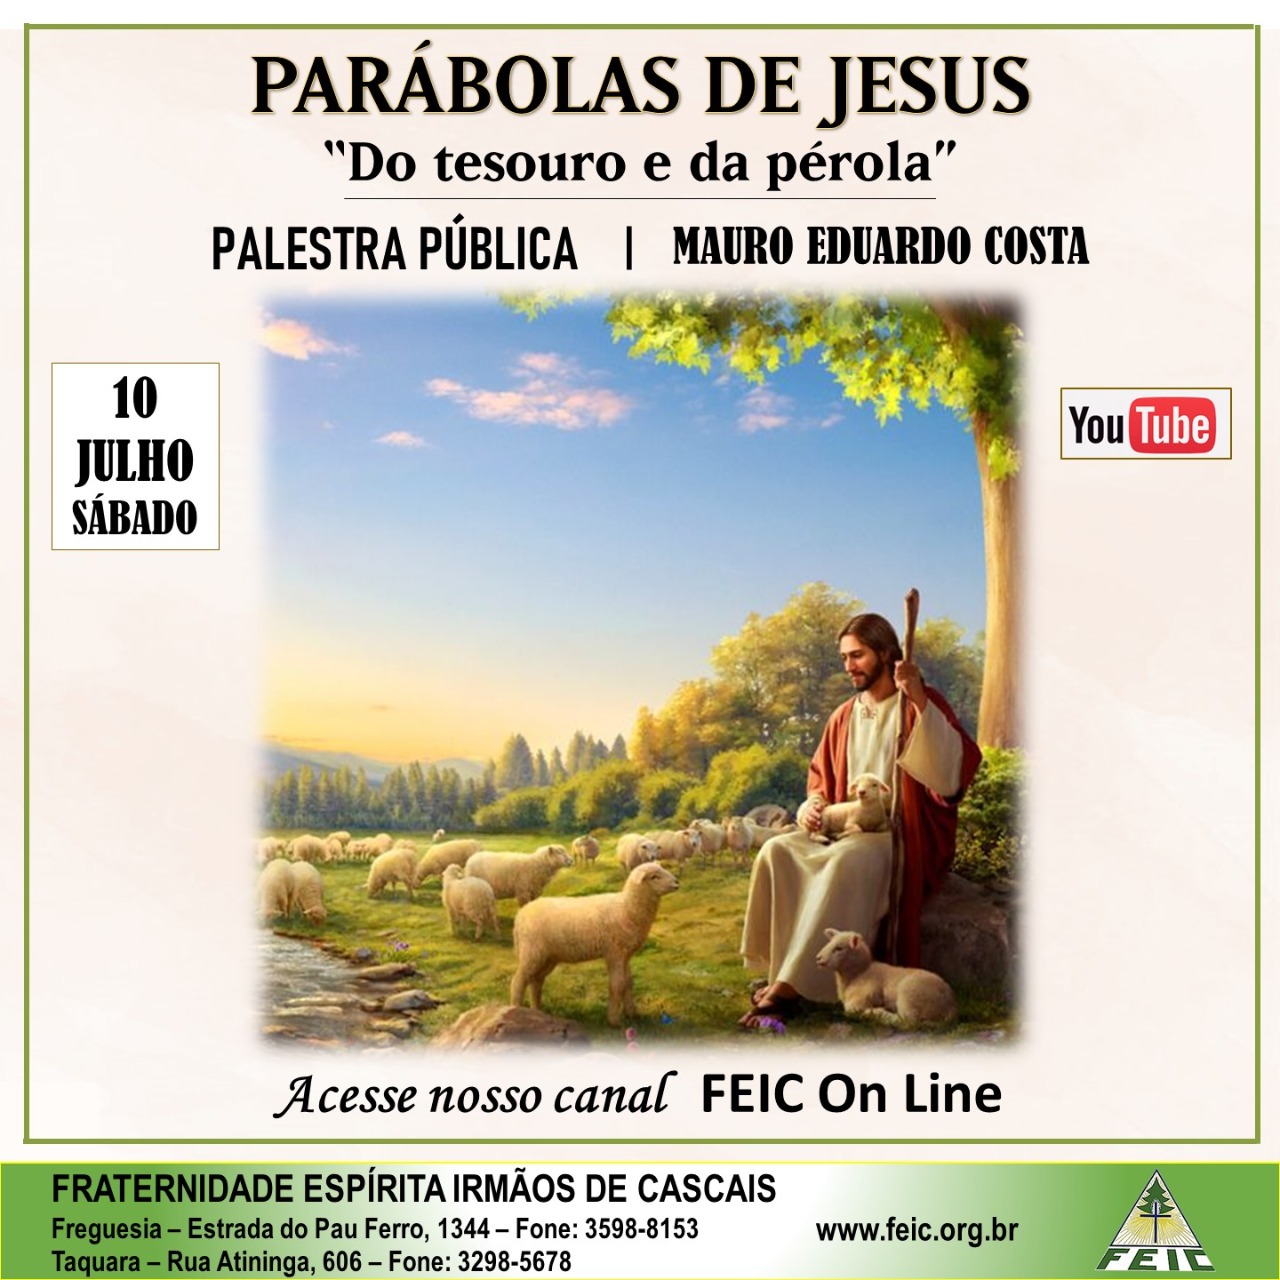 Parábolas de Jesus<br>
Do tesouro e da pérola